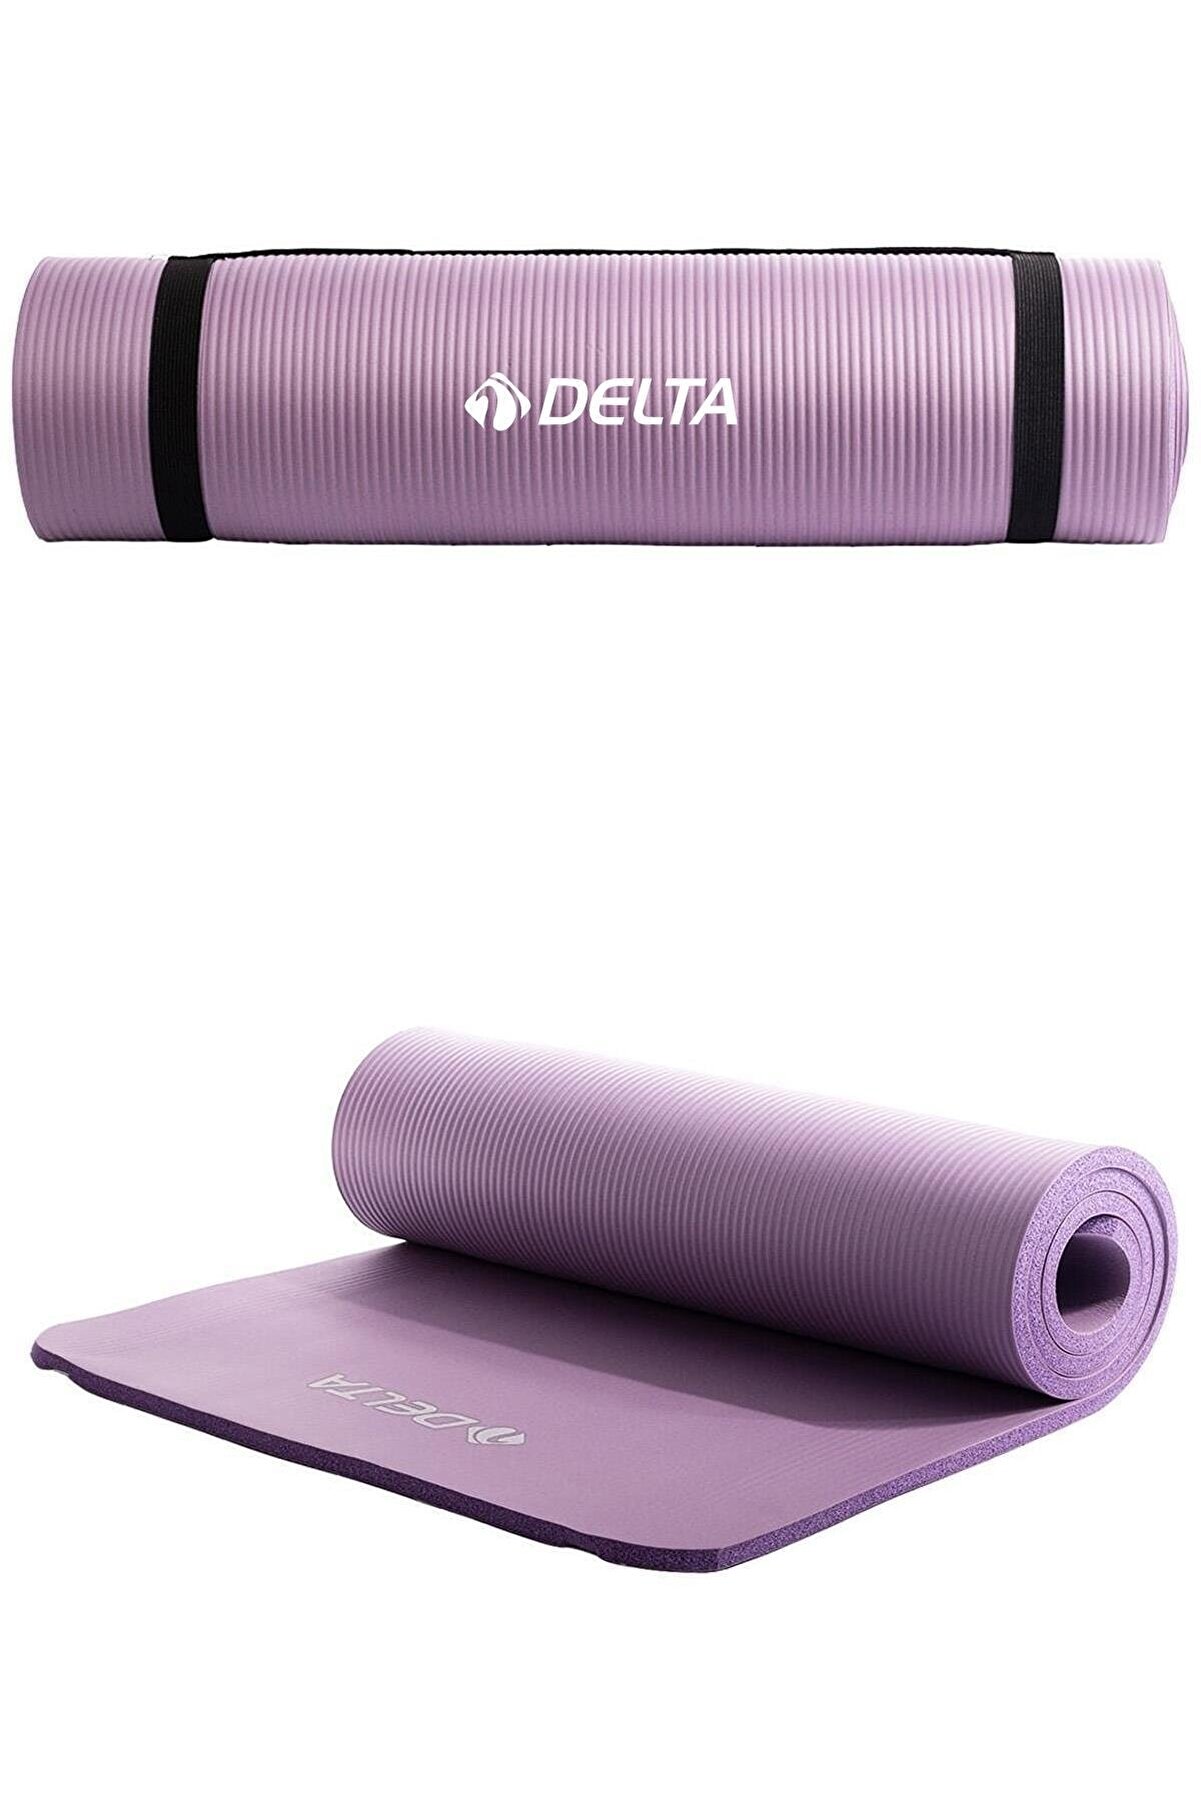 Delta Konfor Zemin 10 Mm Taşıma Askılı Pilates Minderi Yoga Matı